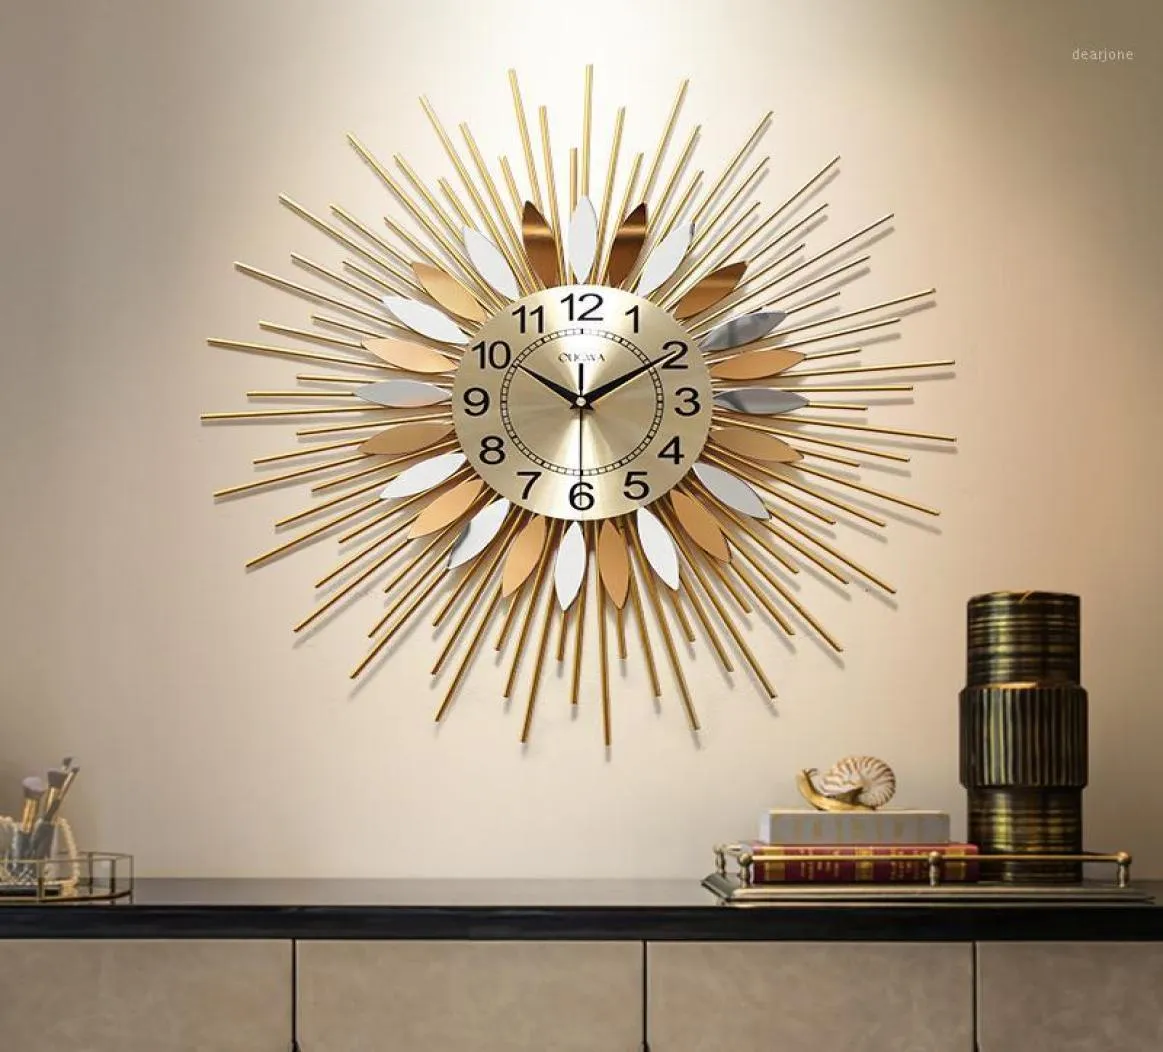 Big Luxury Wall Clock Modernes Design stiller Metall kreative große Wanduhr Gold Minimalistische Wohnzimmer KLOK Home Decor17463845